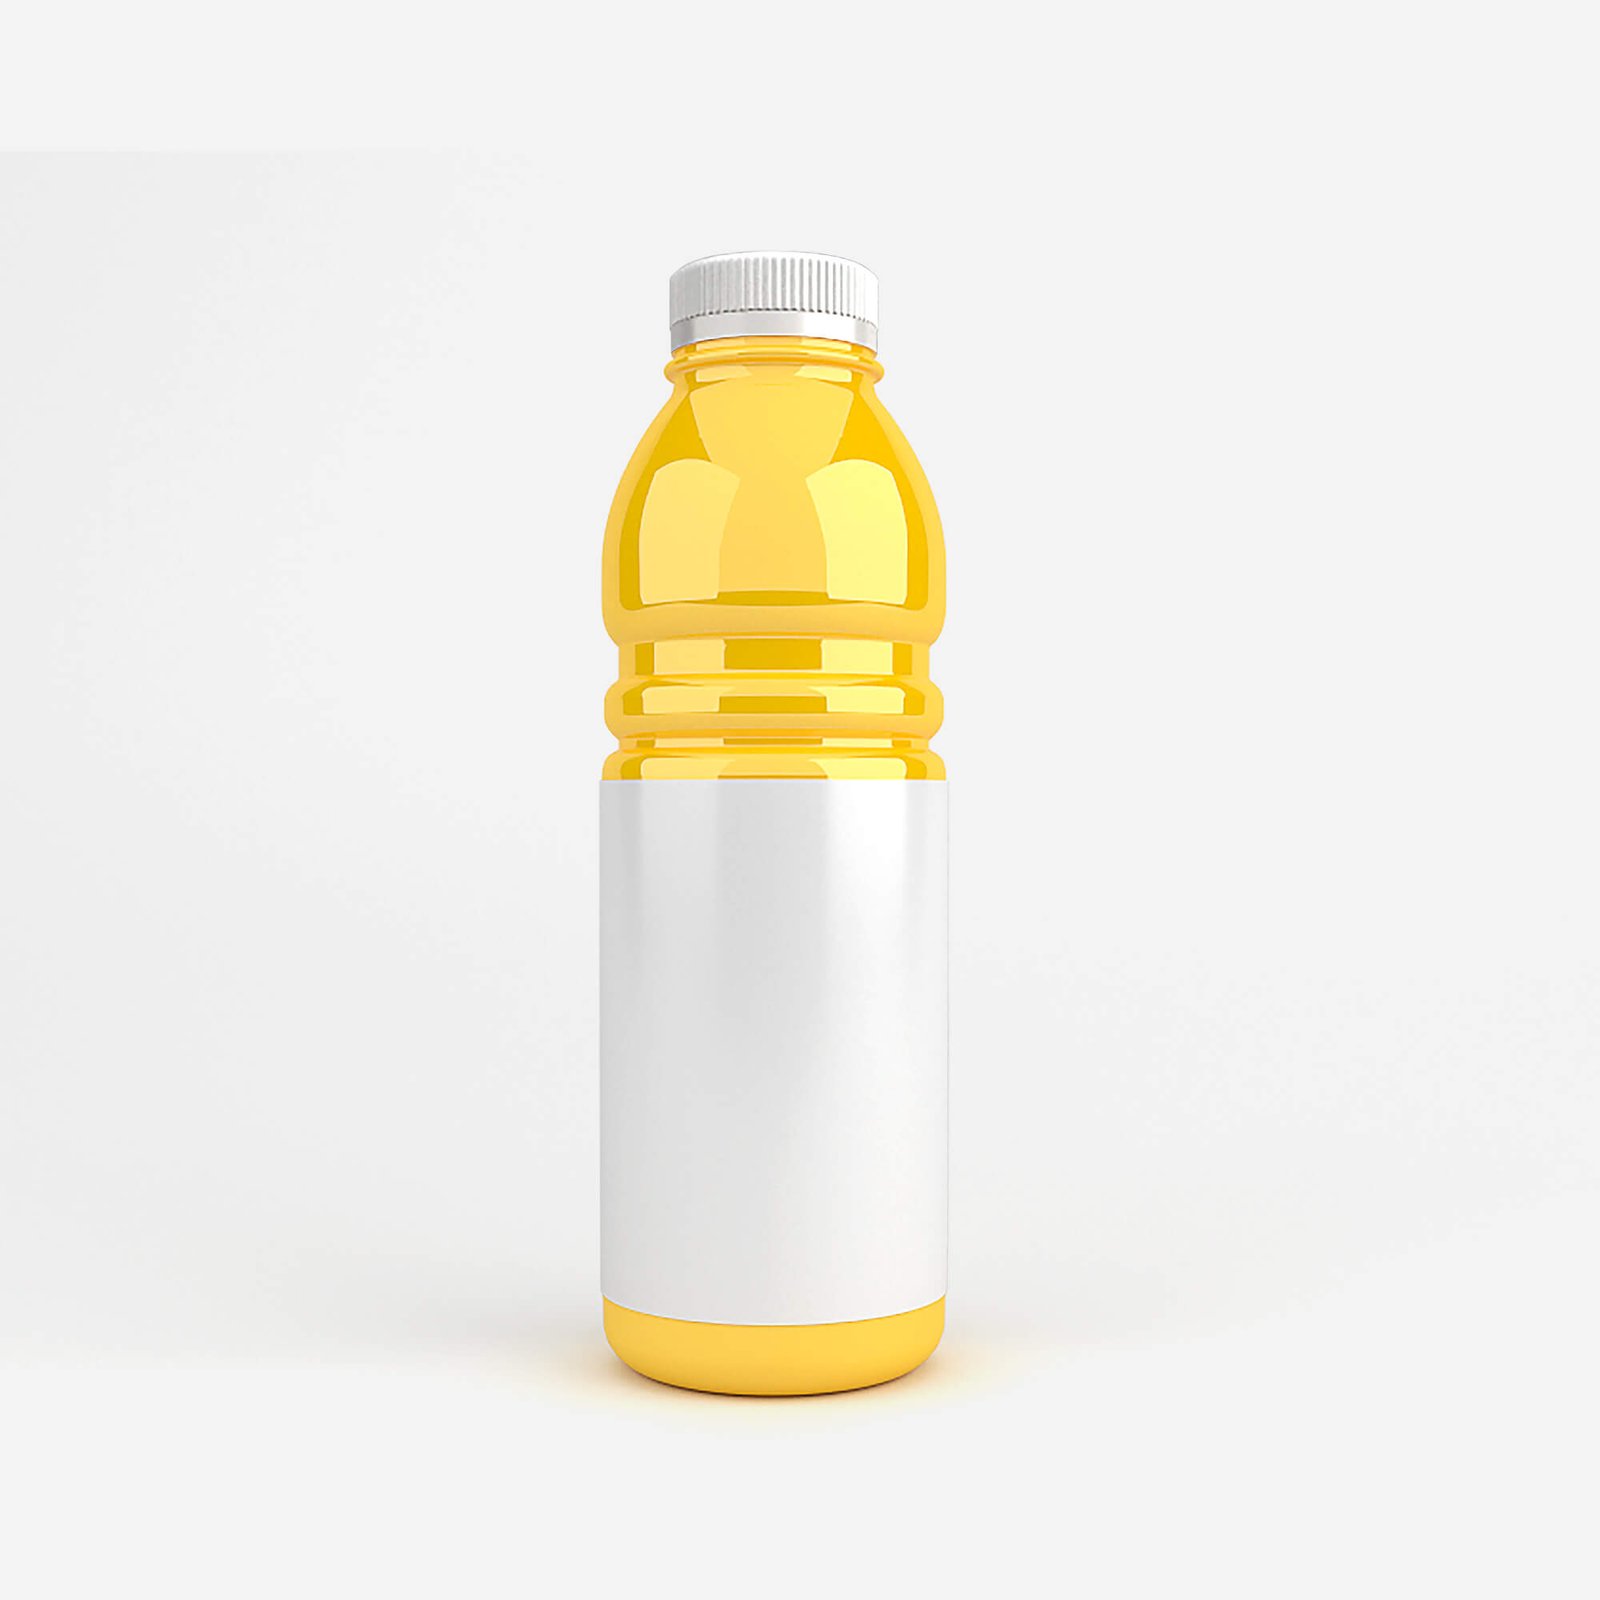 Download Free Soda Bottle Mockup PSD Template - Mockup Den